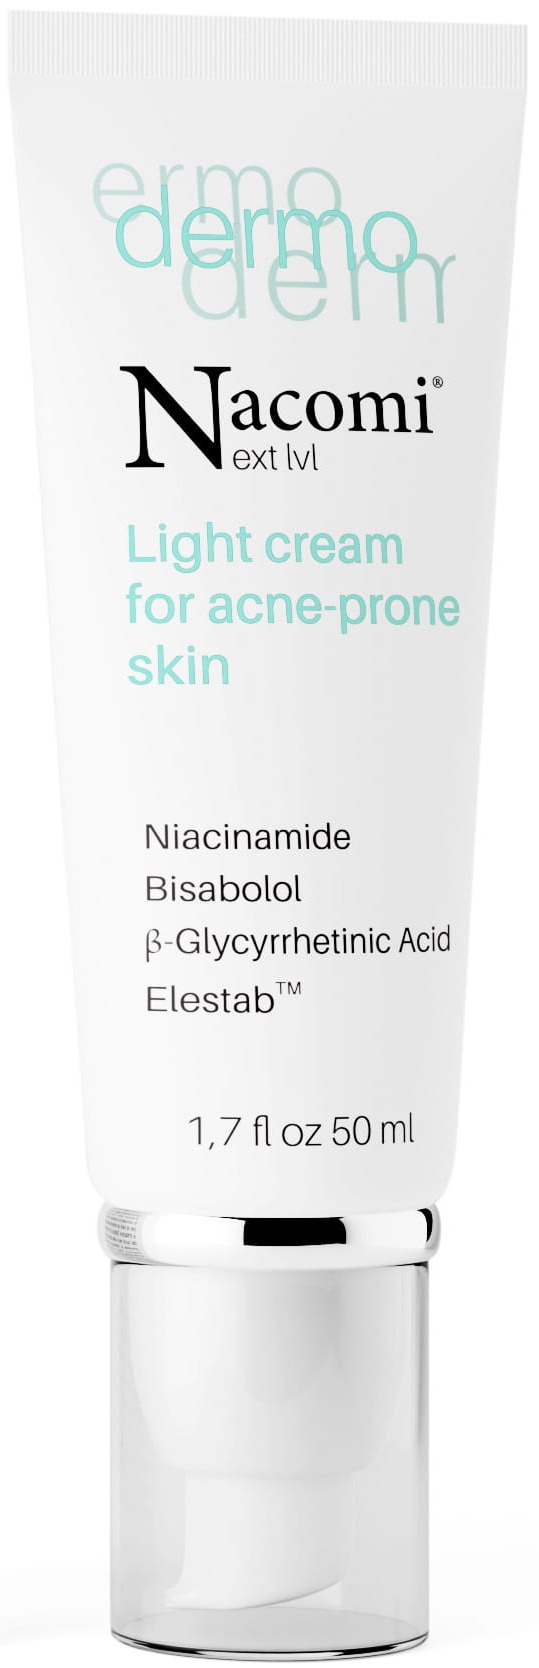 Nacomi Next Level Dermo Light Cream For Acne-Prone Skin